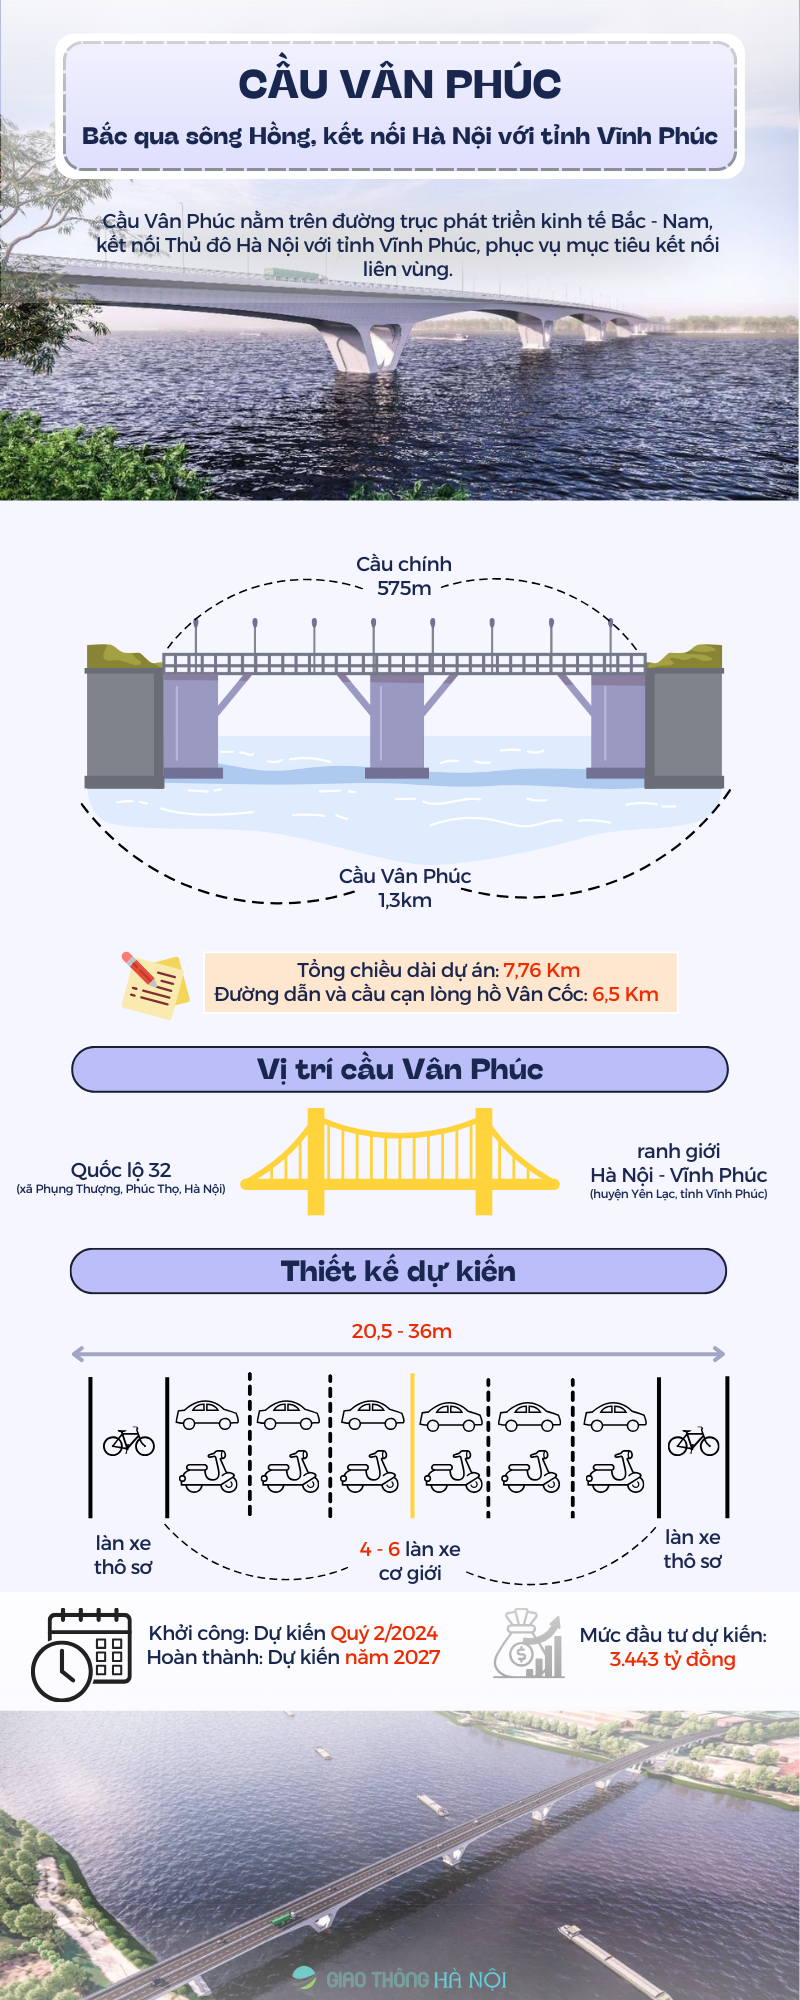 Cầu Vân Phúc bắc qua sông Hồng, kết nối Hà Nội với tỉnh Vĩnh Phúc - Ảnh 1